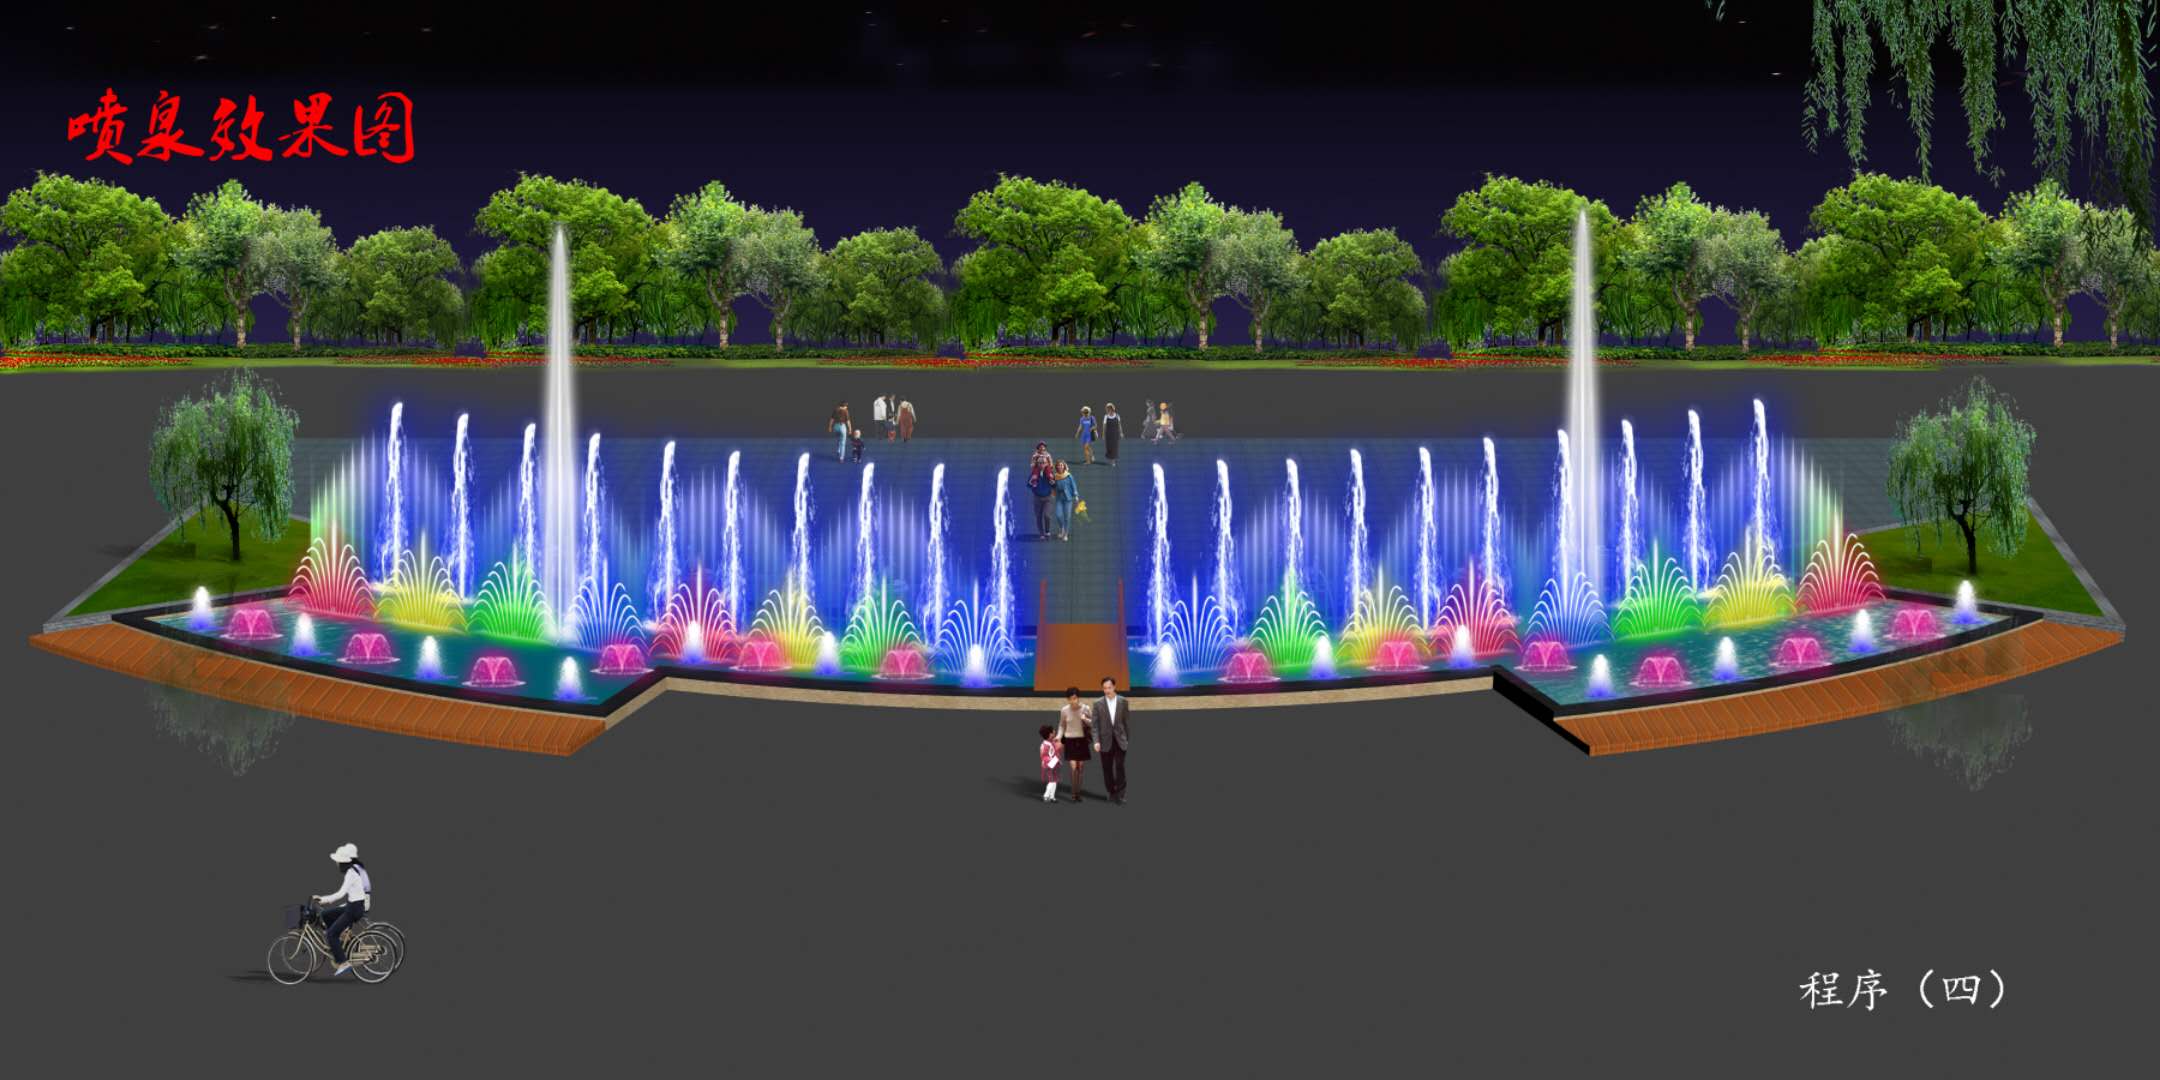 整套音乐喷泉设备 小型音乐喷泉 喷泉景观配件 全套喷泉制作安装图片